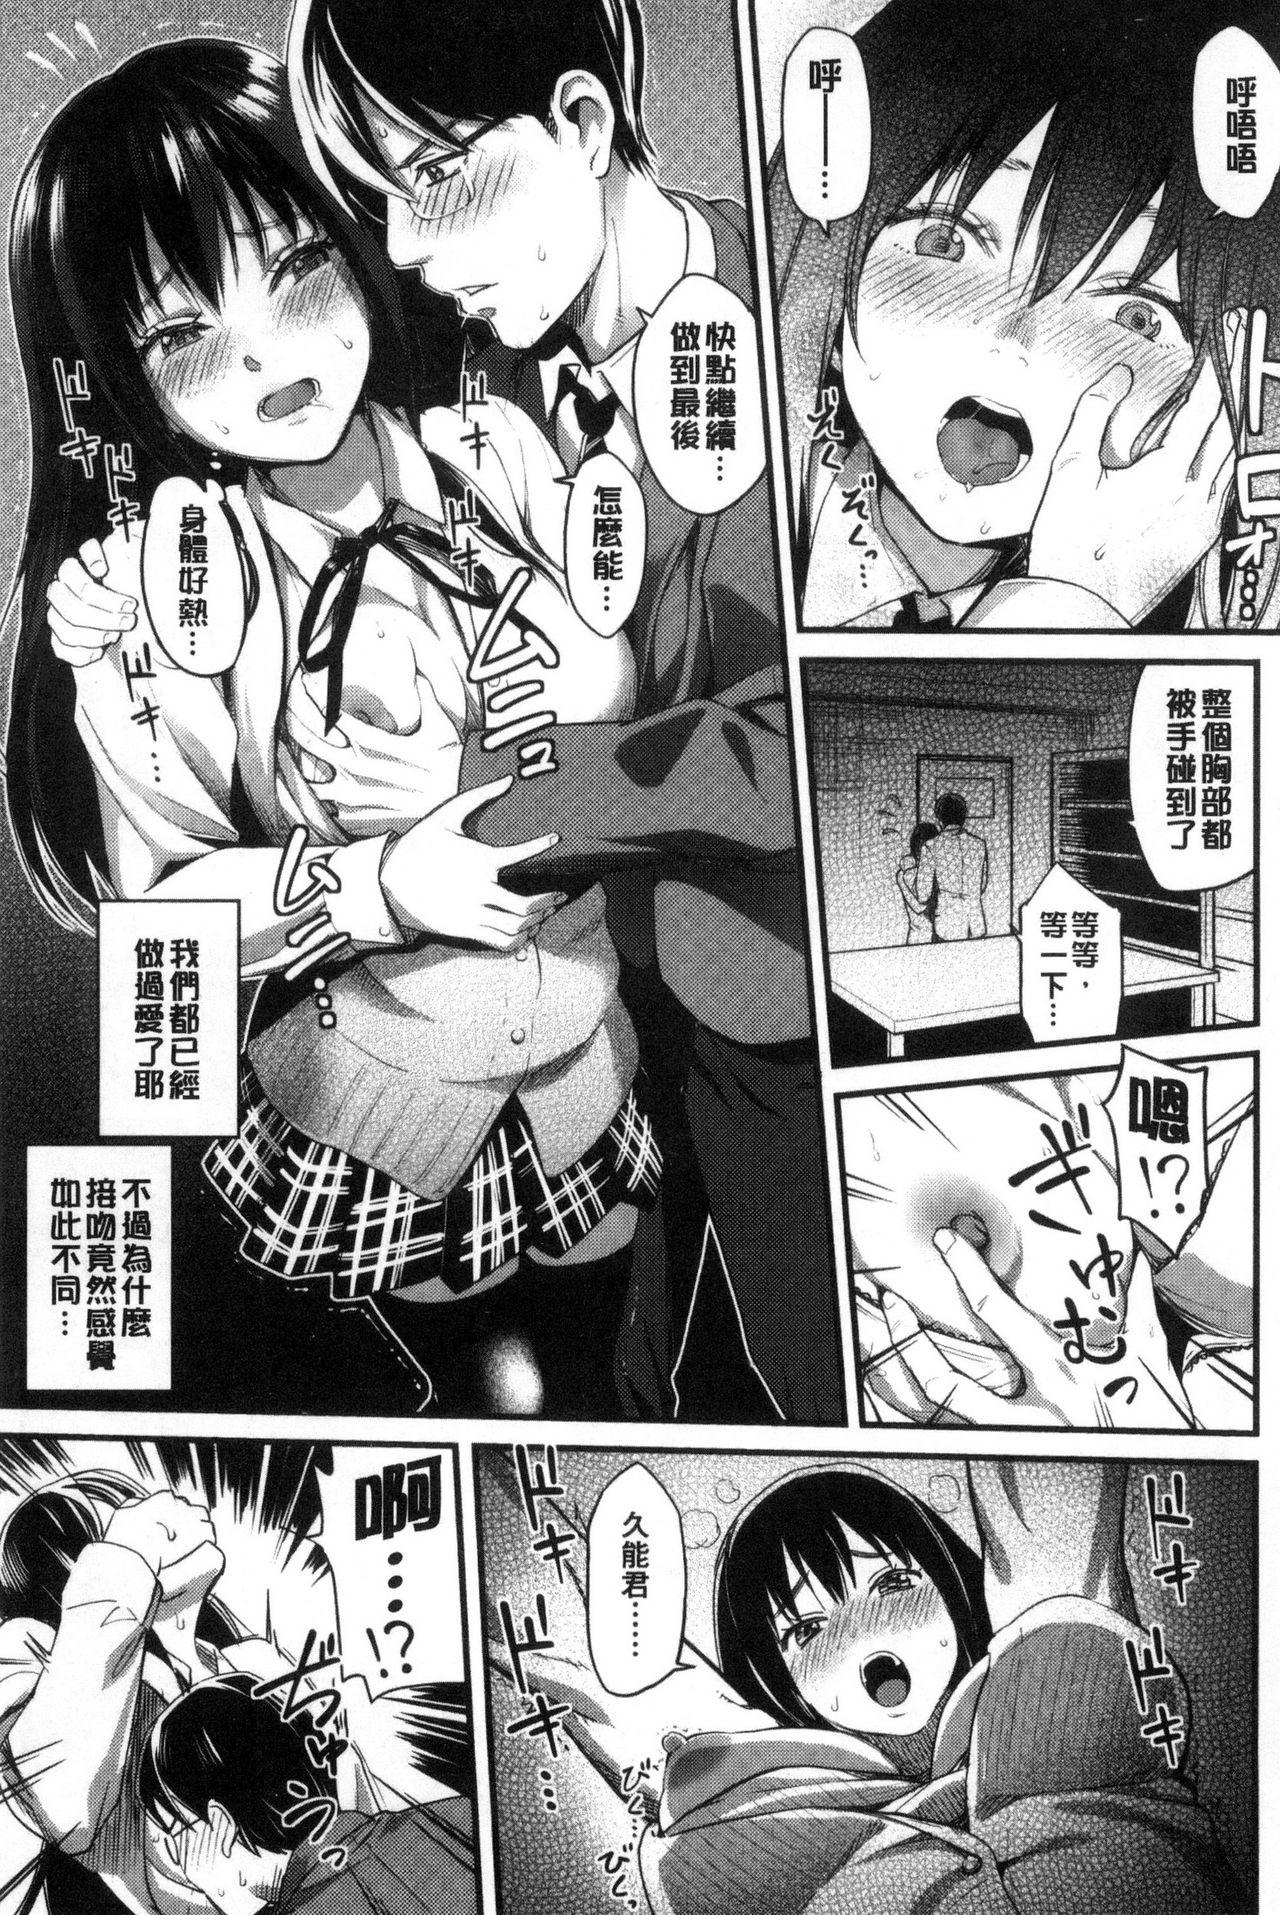 Seifuku no Mama Aishinasai! - Love in school uniform 51